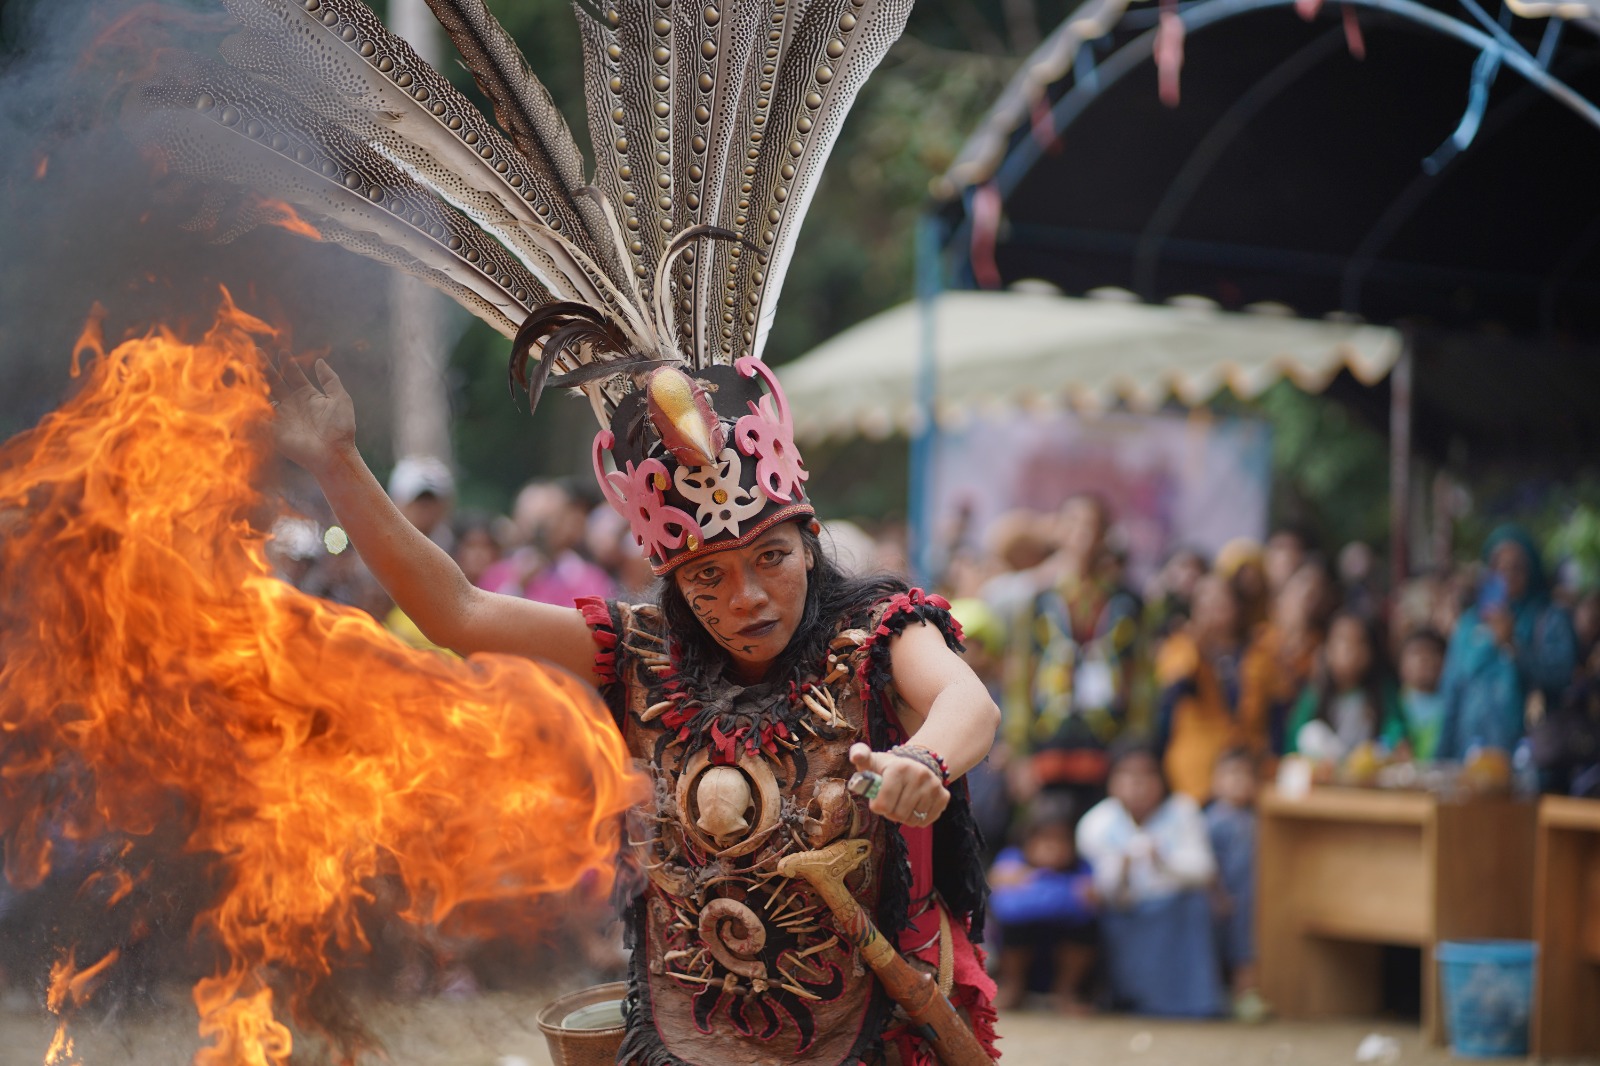 Aneka Ragam Buah Lokal Dipamerkan Pada Festival Buah Mamigang